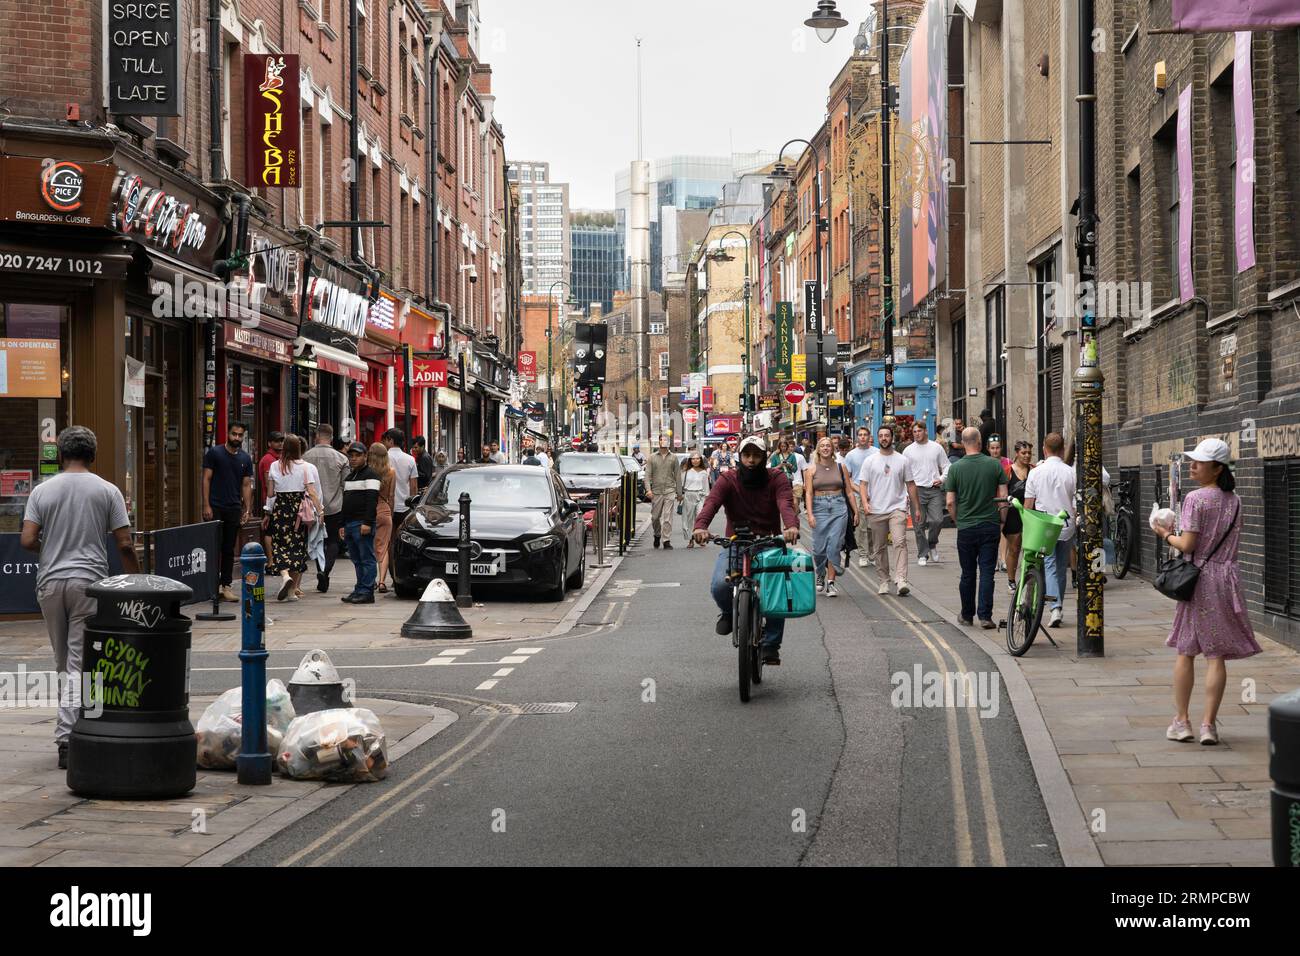 Les gens marchent et font du vélo le long de Brick Lane - une rue célèbre dans l'East End de Londres et le cœur de la communauté bangladaise du pays. ROYAUME-UNI Banque D'Images